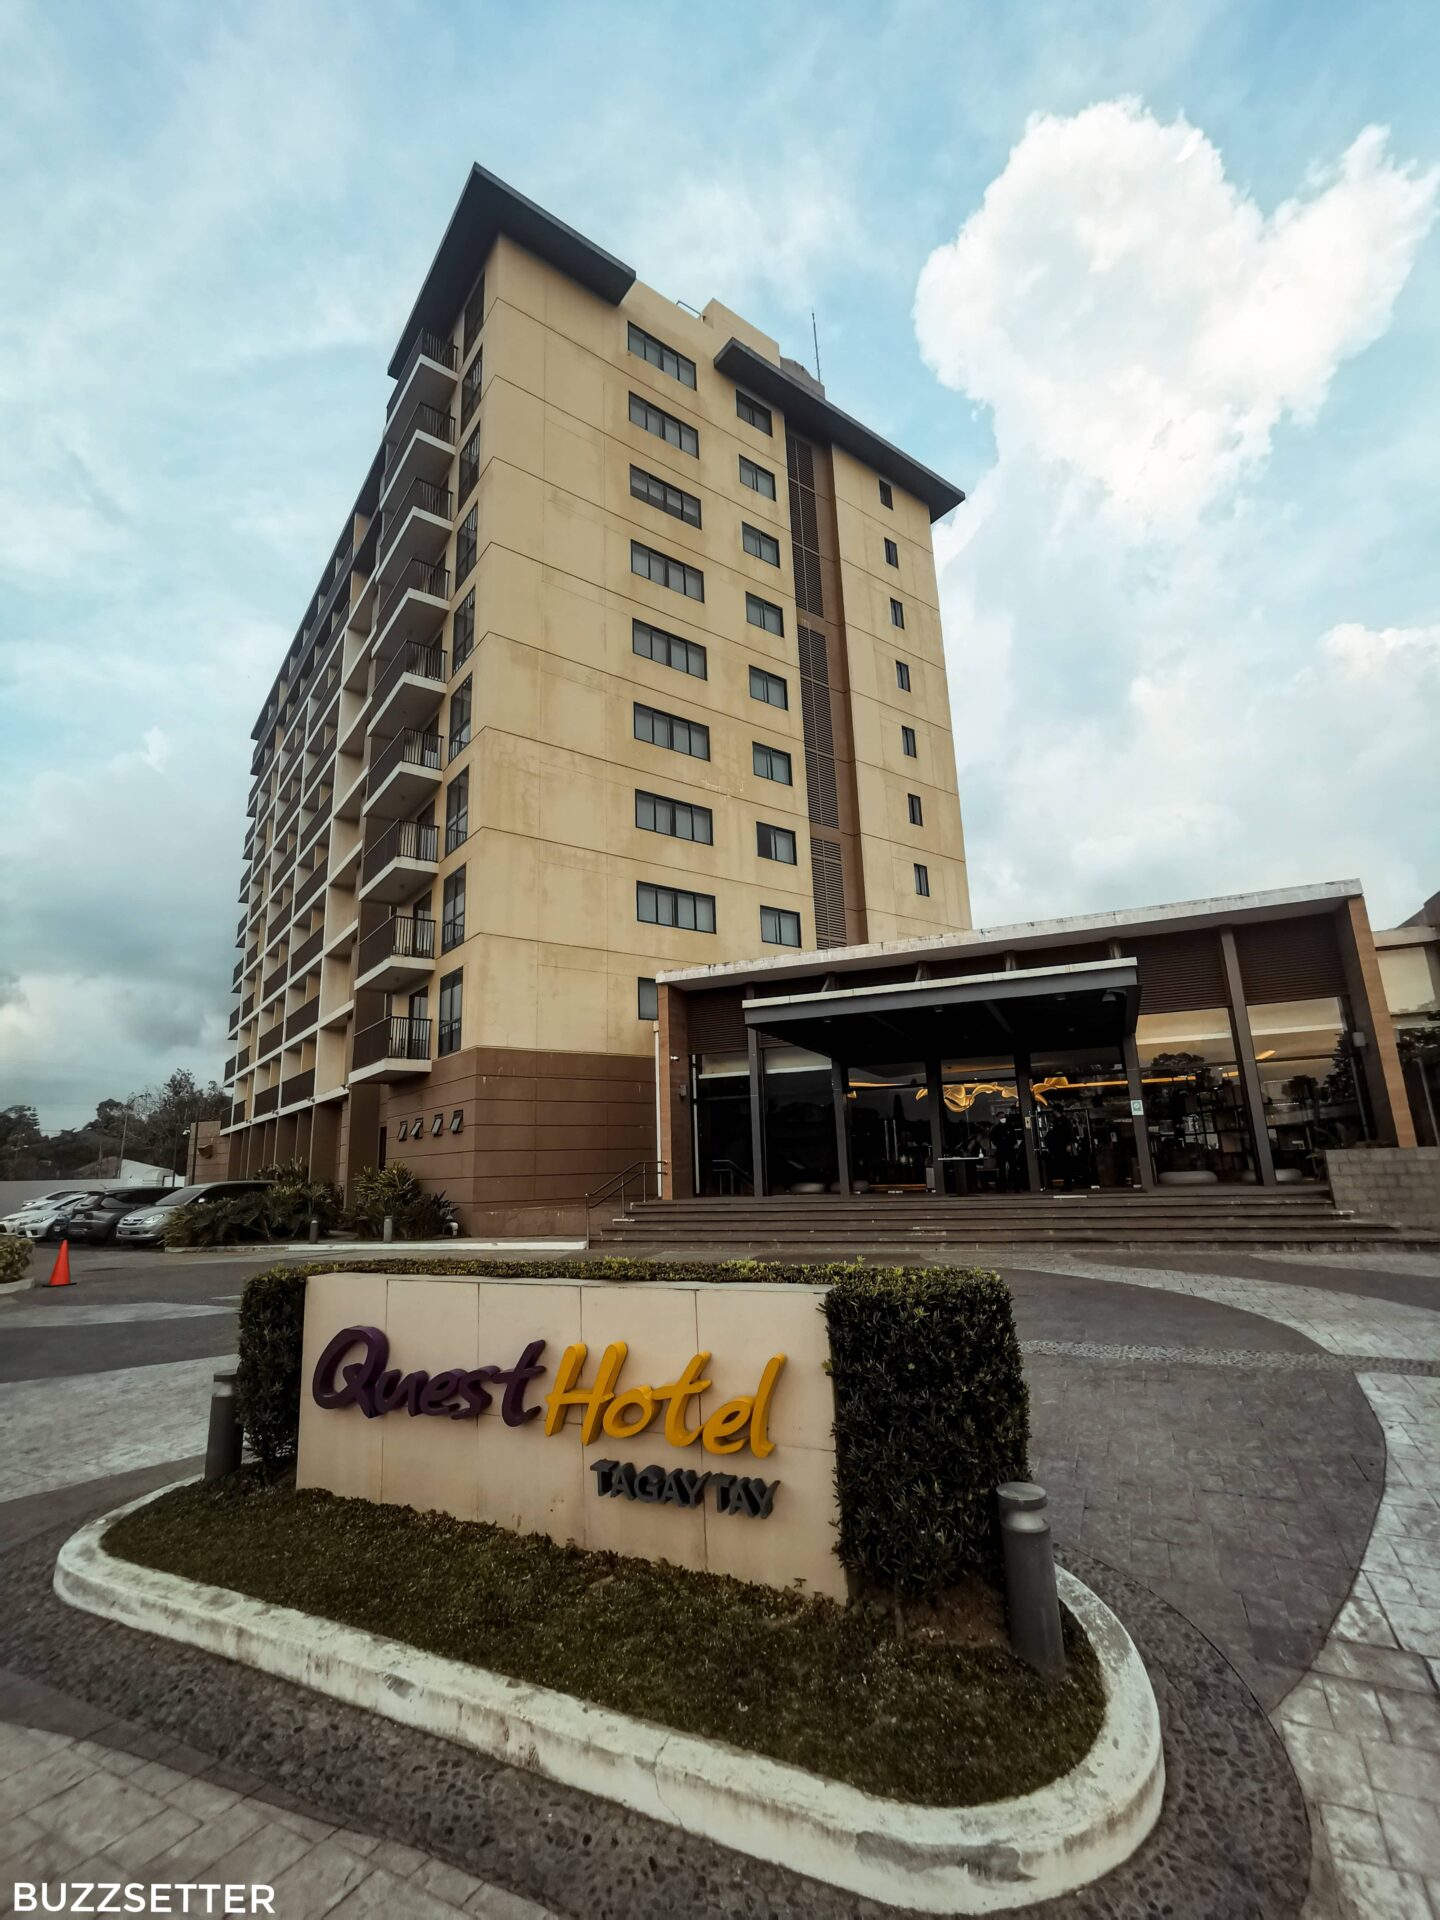 quest hotel tagaytay staycation